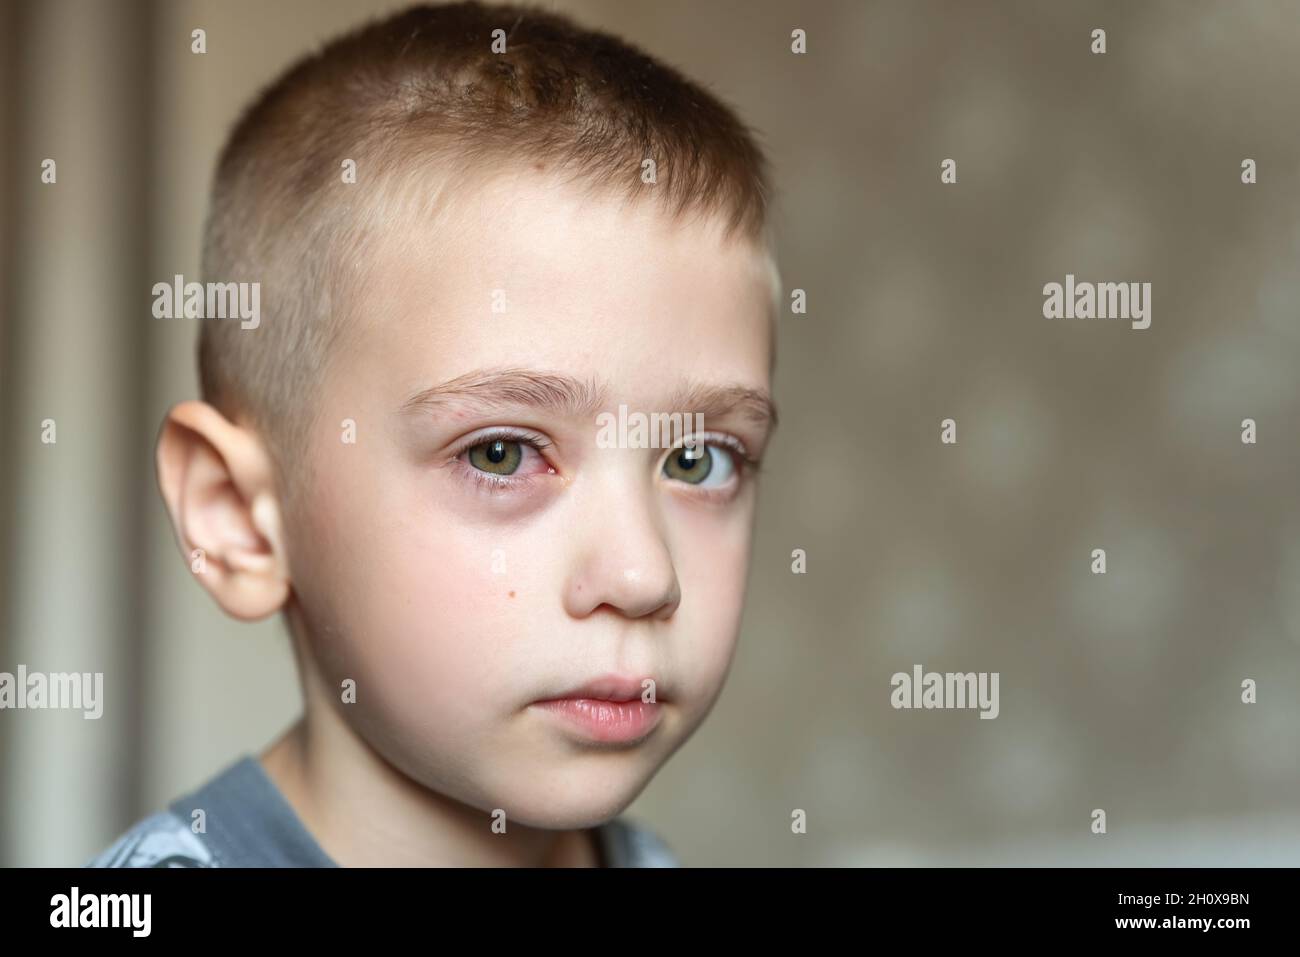 Allergie aux yeux rouges enflée chez le garçon.Portrait d'un ...